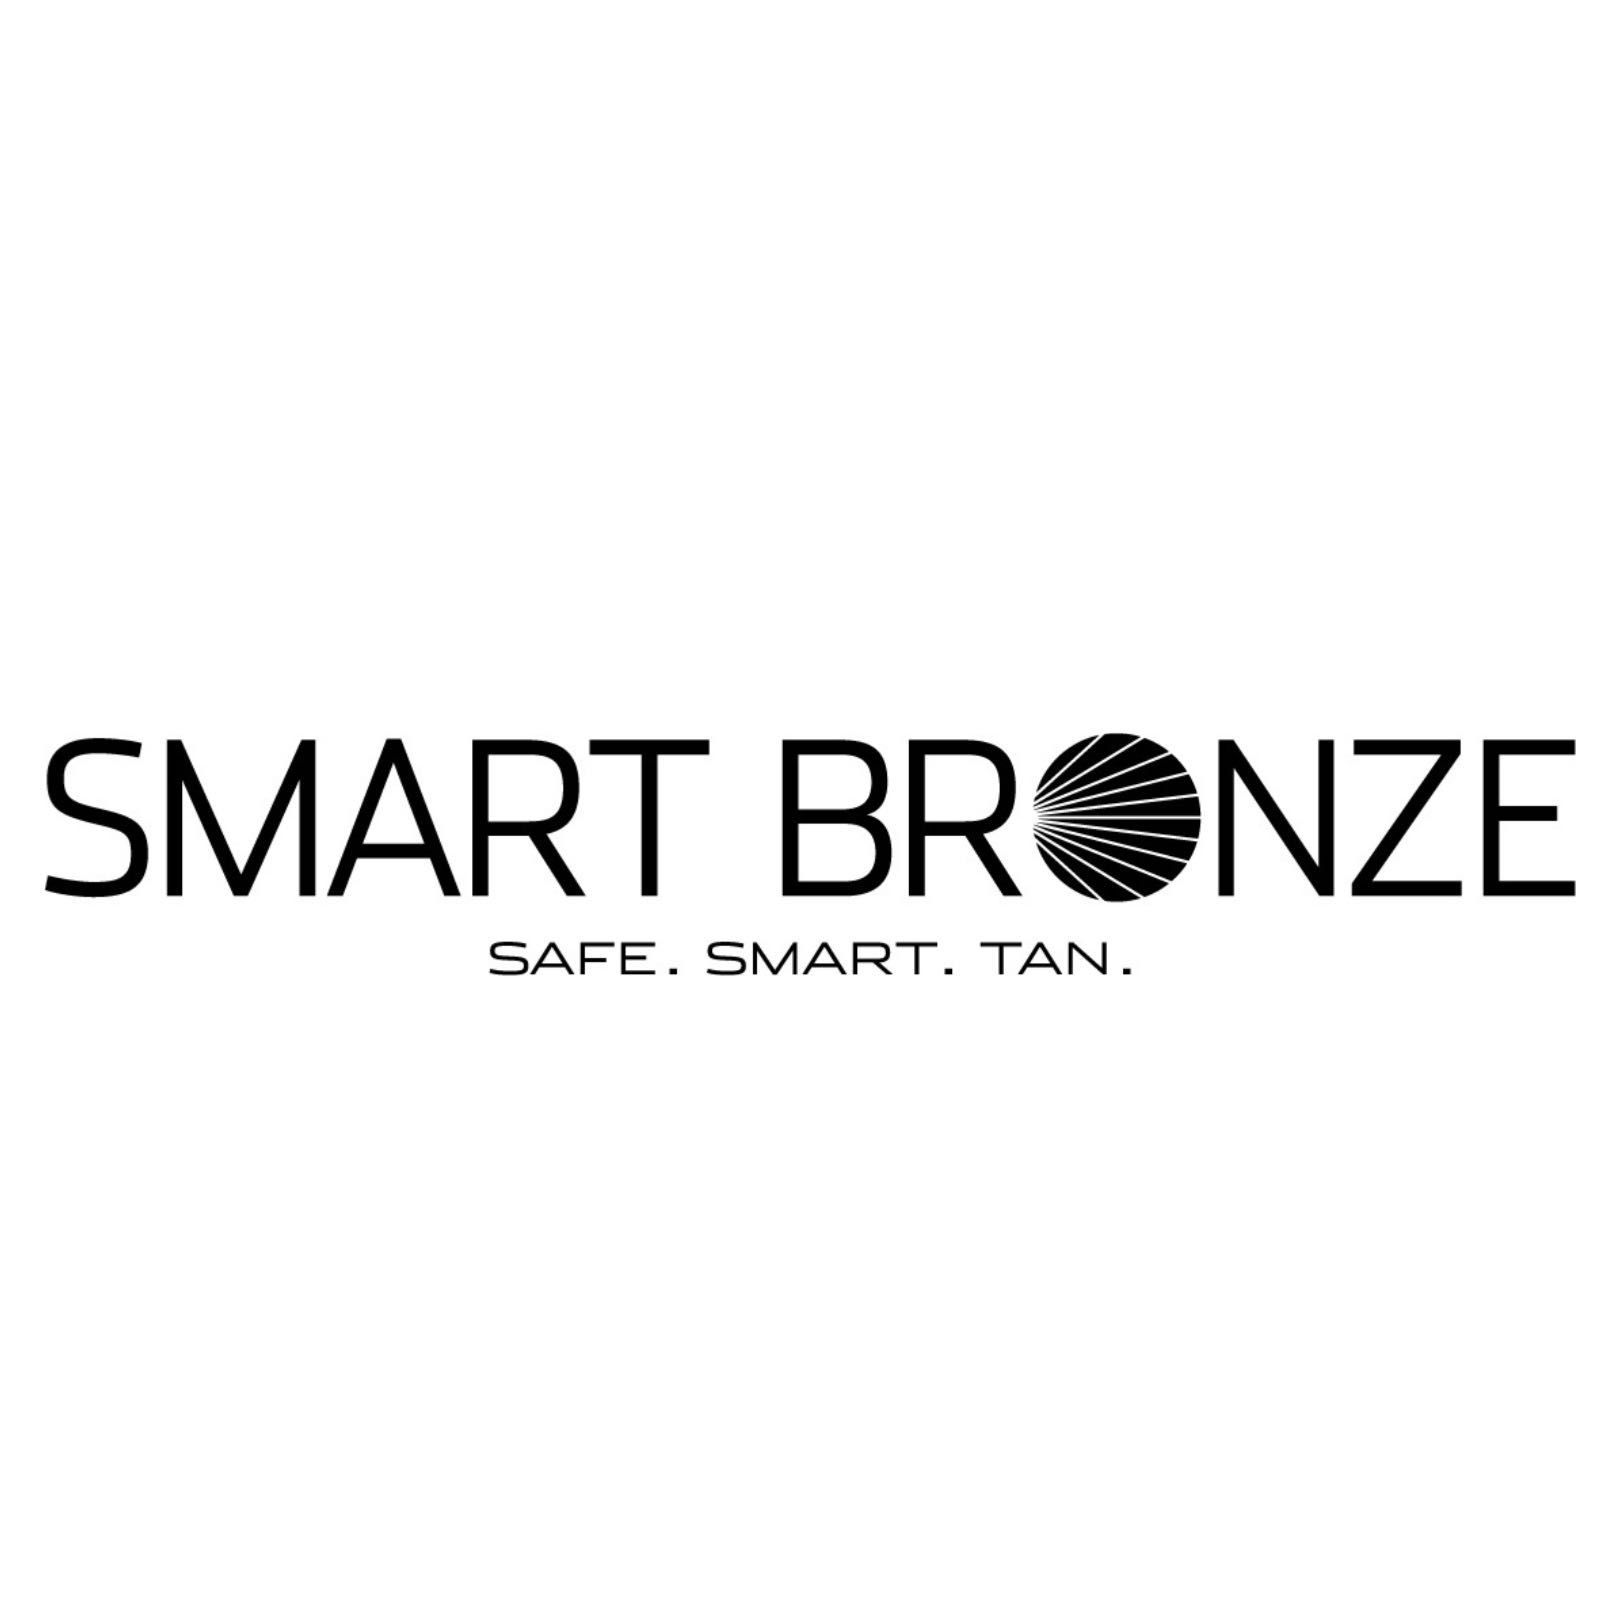 Smart Bronze Airbrush Tanning Studio, 100 W Southlake Blvd, 142, Southlake, 76092